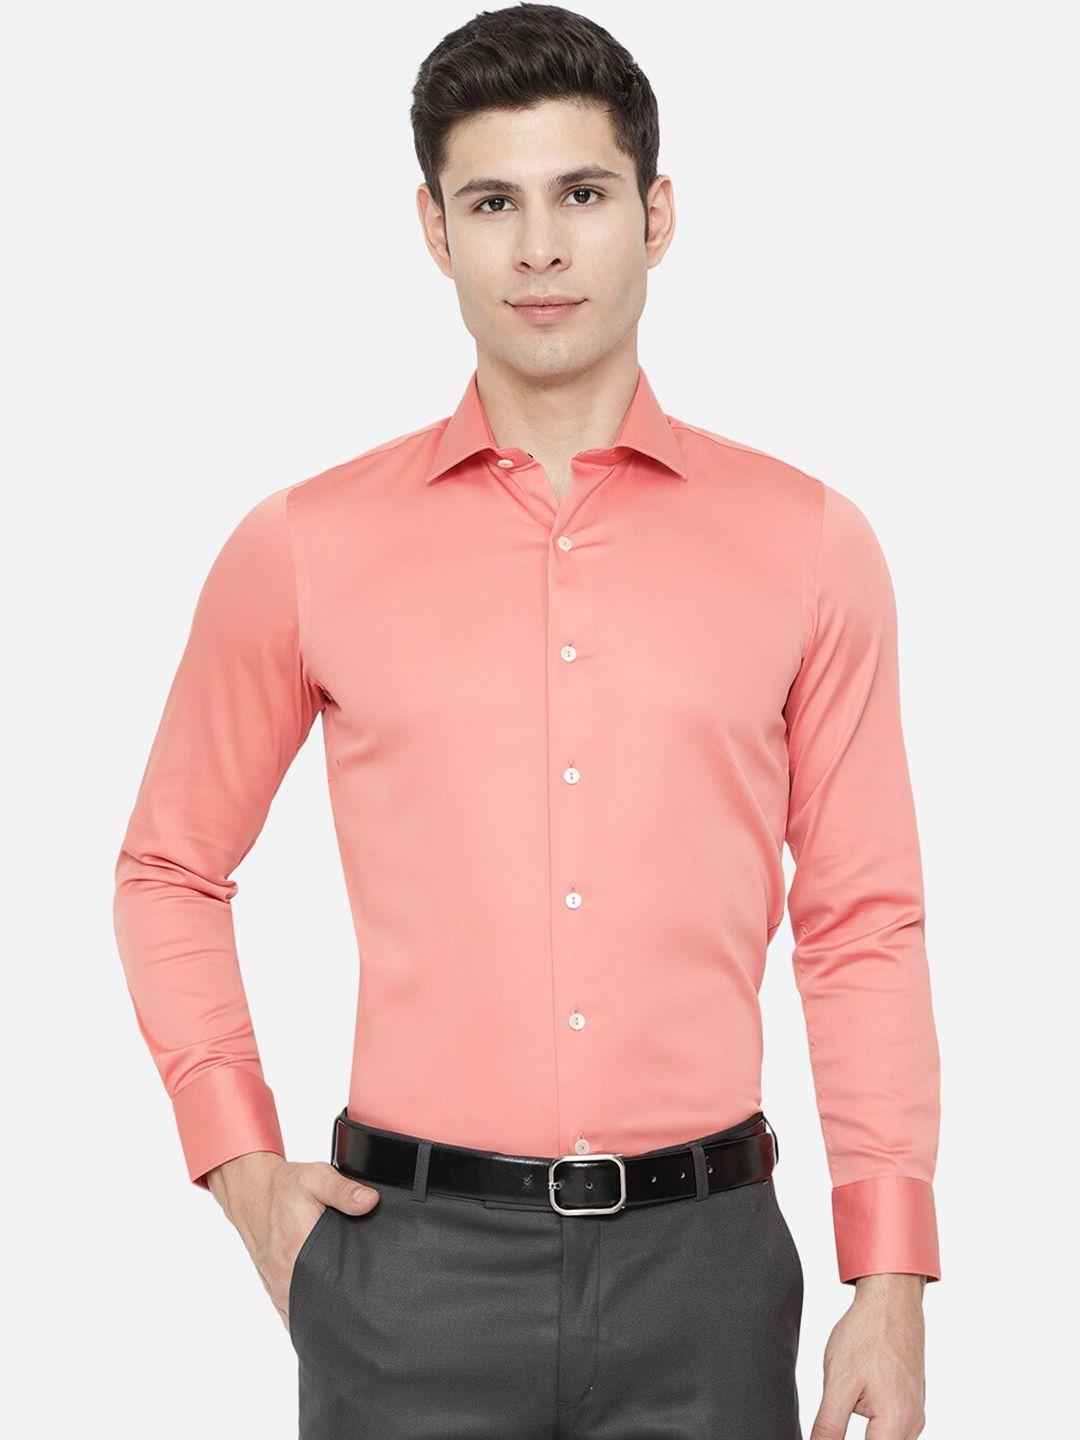 wyre-men-pink-slim-fit-formal-shirt